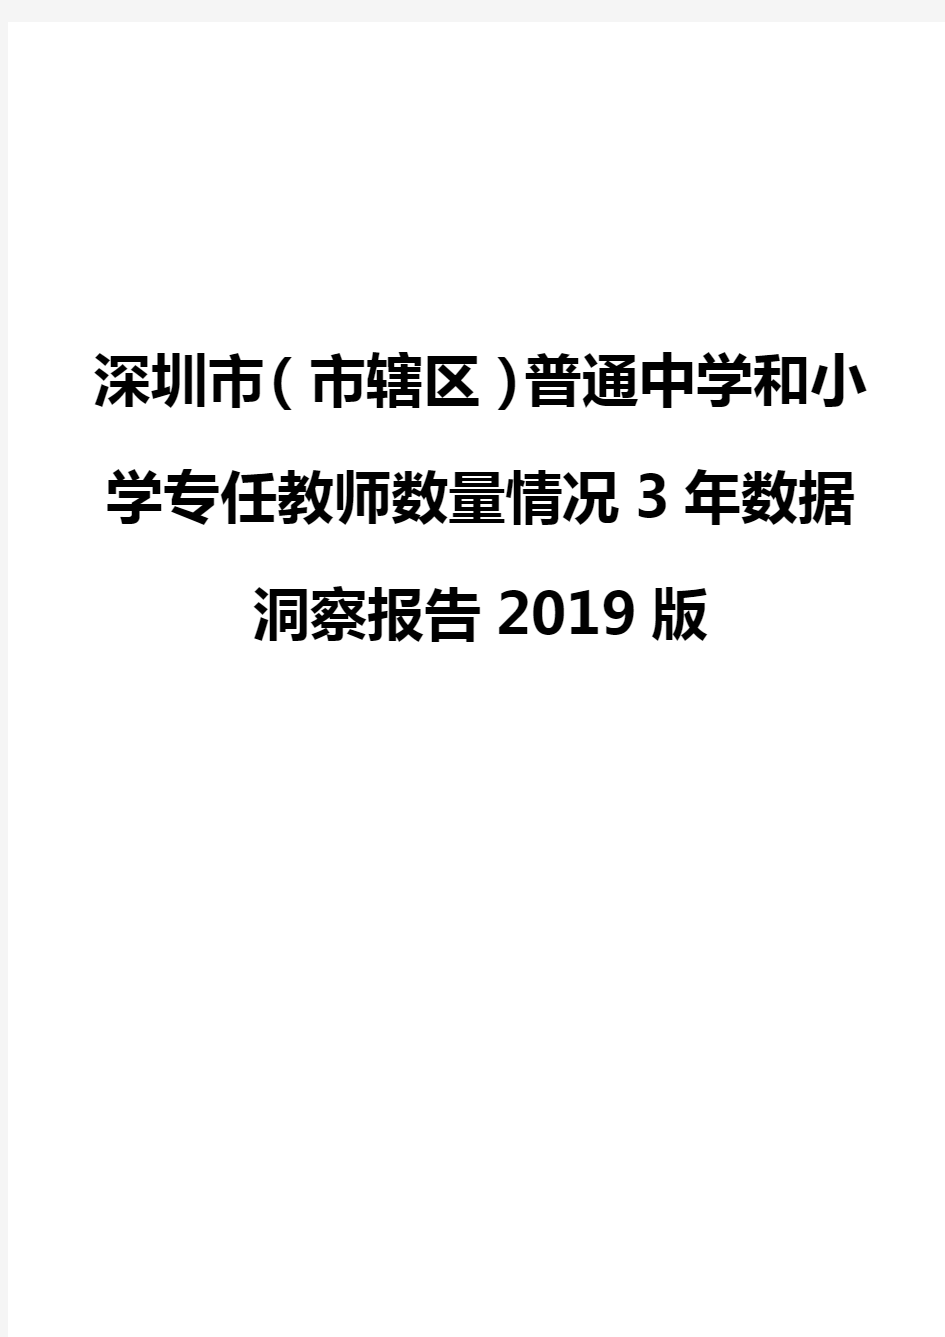 深圳市(市辖区)普通中学和小学专任教师数量情况3年数据洞察报告2019版